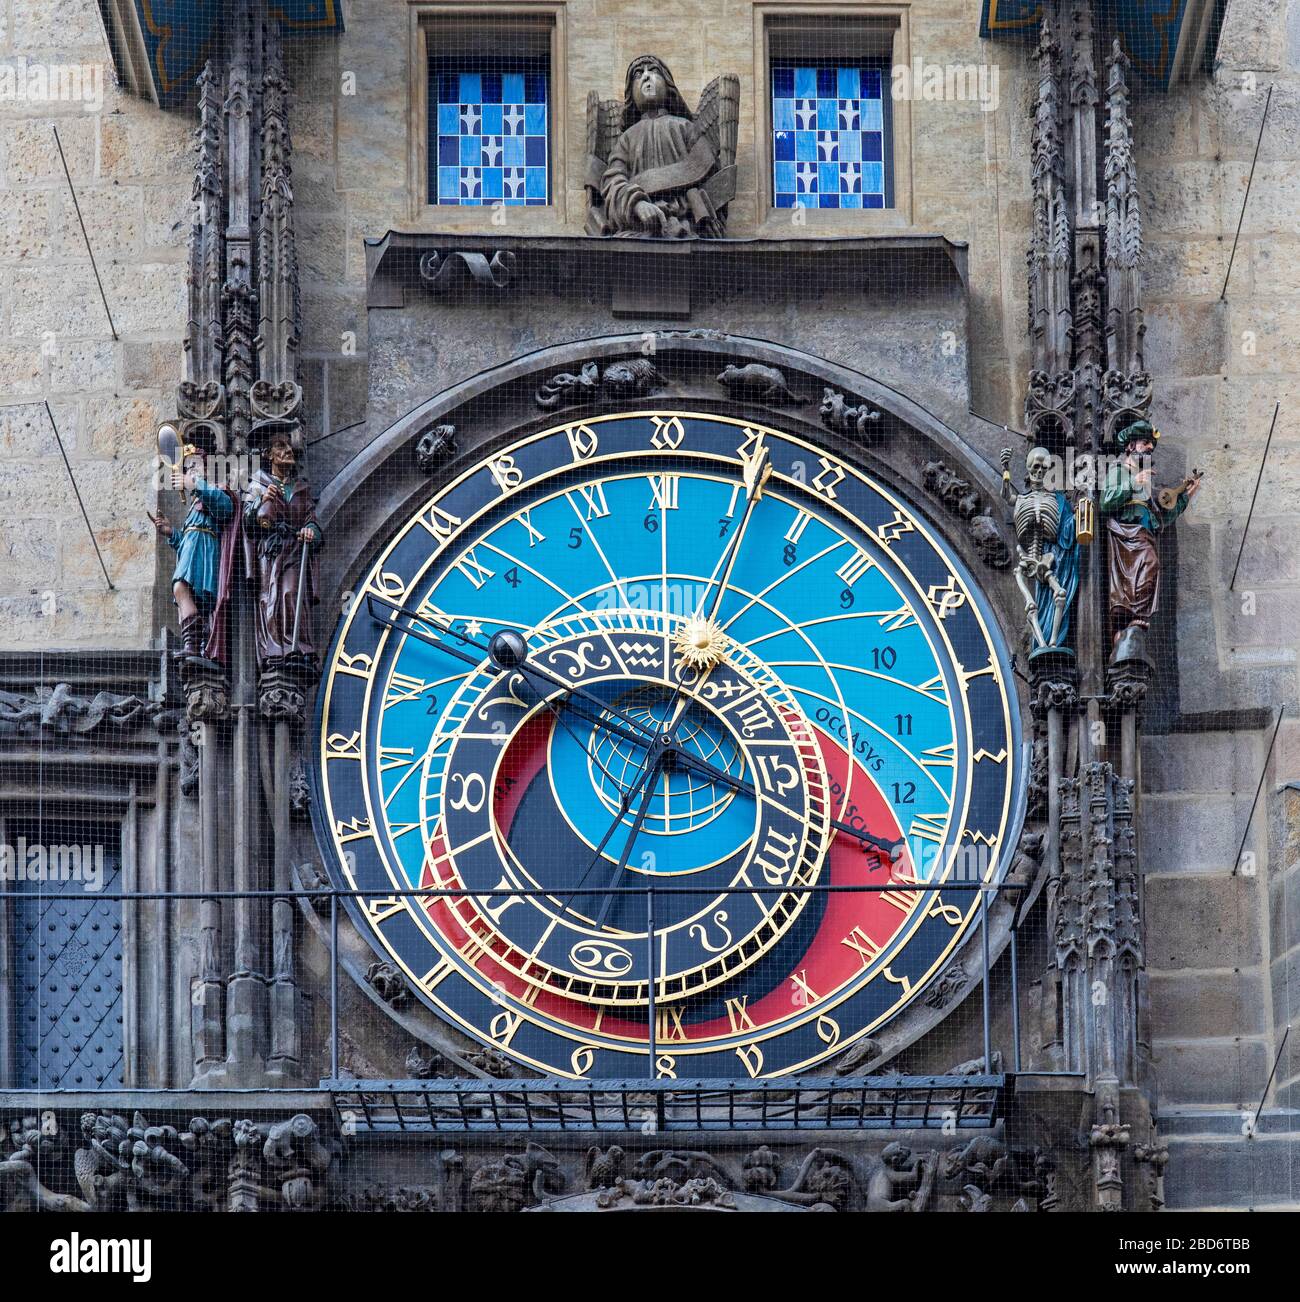 Astronomische Uhr am Altstädter Rathaus, Prag, Tschechische Republik Stock  Photo - Alamy